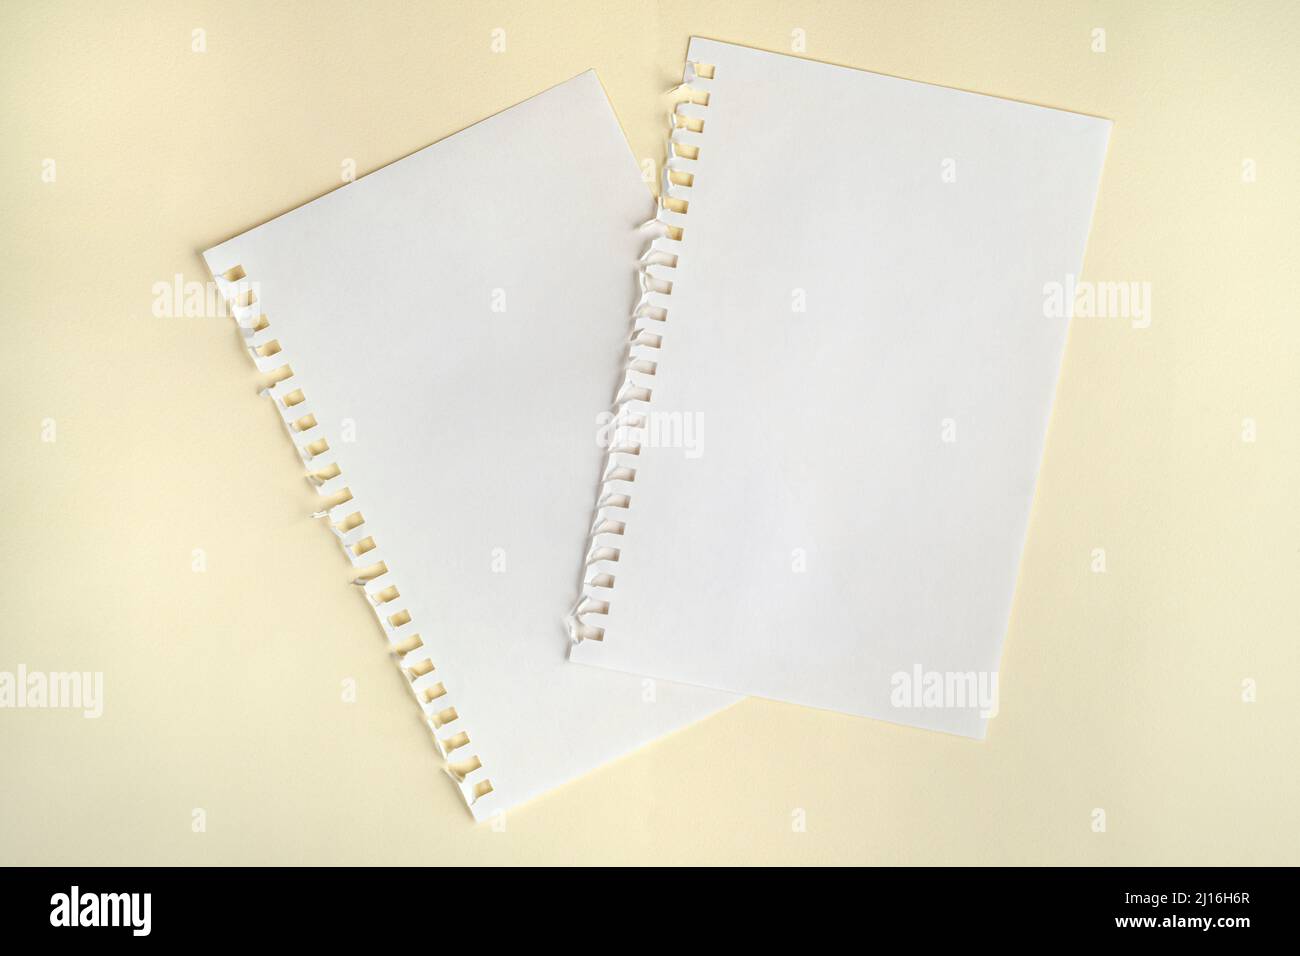 deux feuilles de papier vierges avec perforation latérale sur une surface  Photo Stock - Alamy